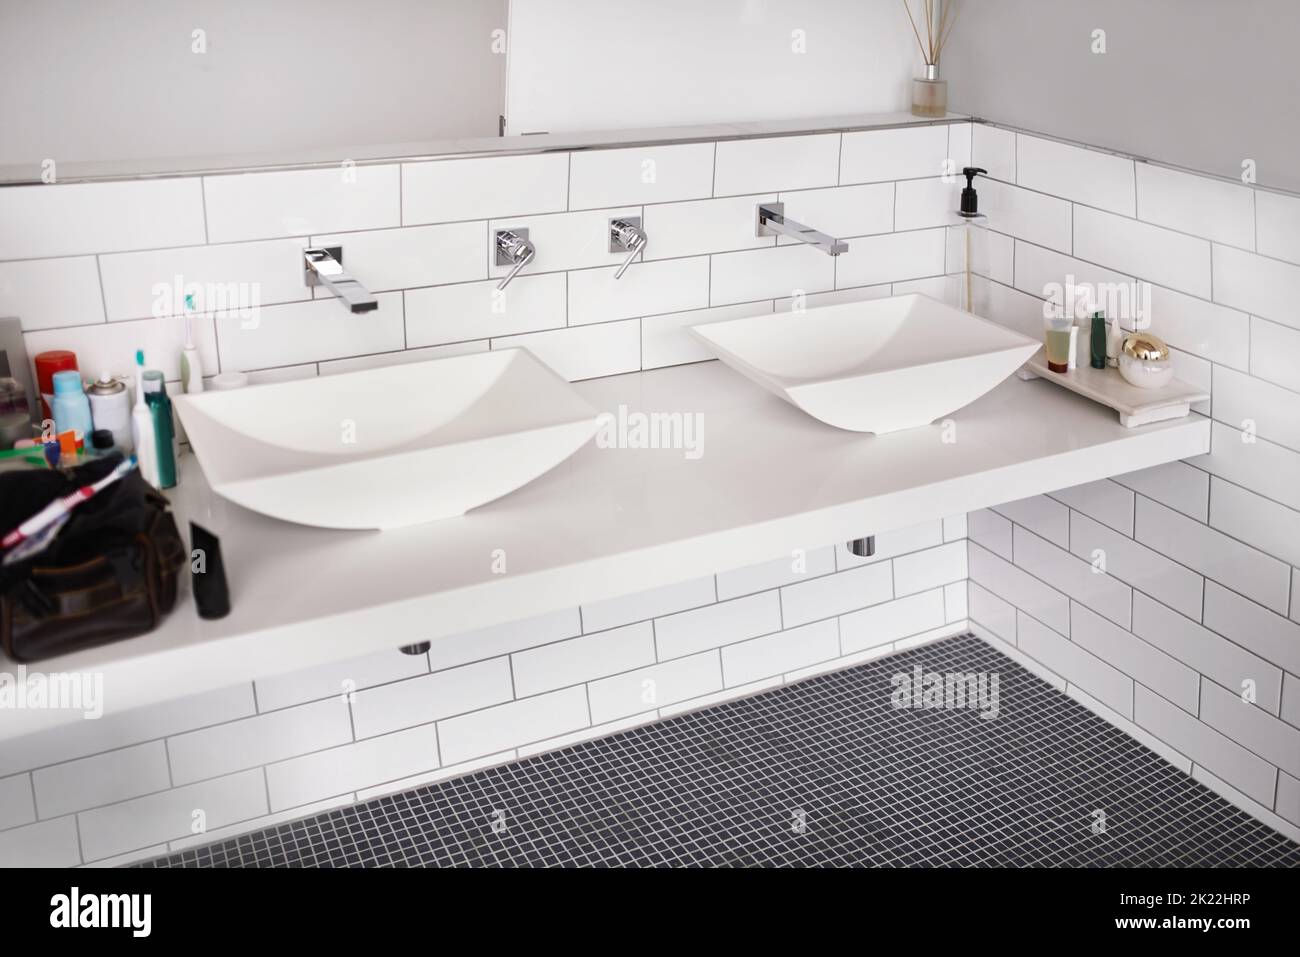 Design moderne pour les jours de vie. Salle de bains moderne et propre avec des équipements de luxe Banque D'Images